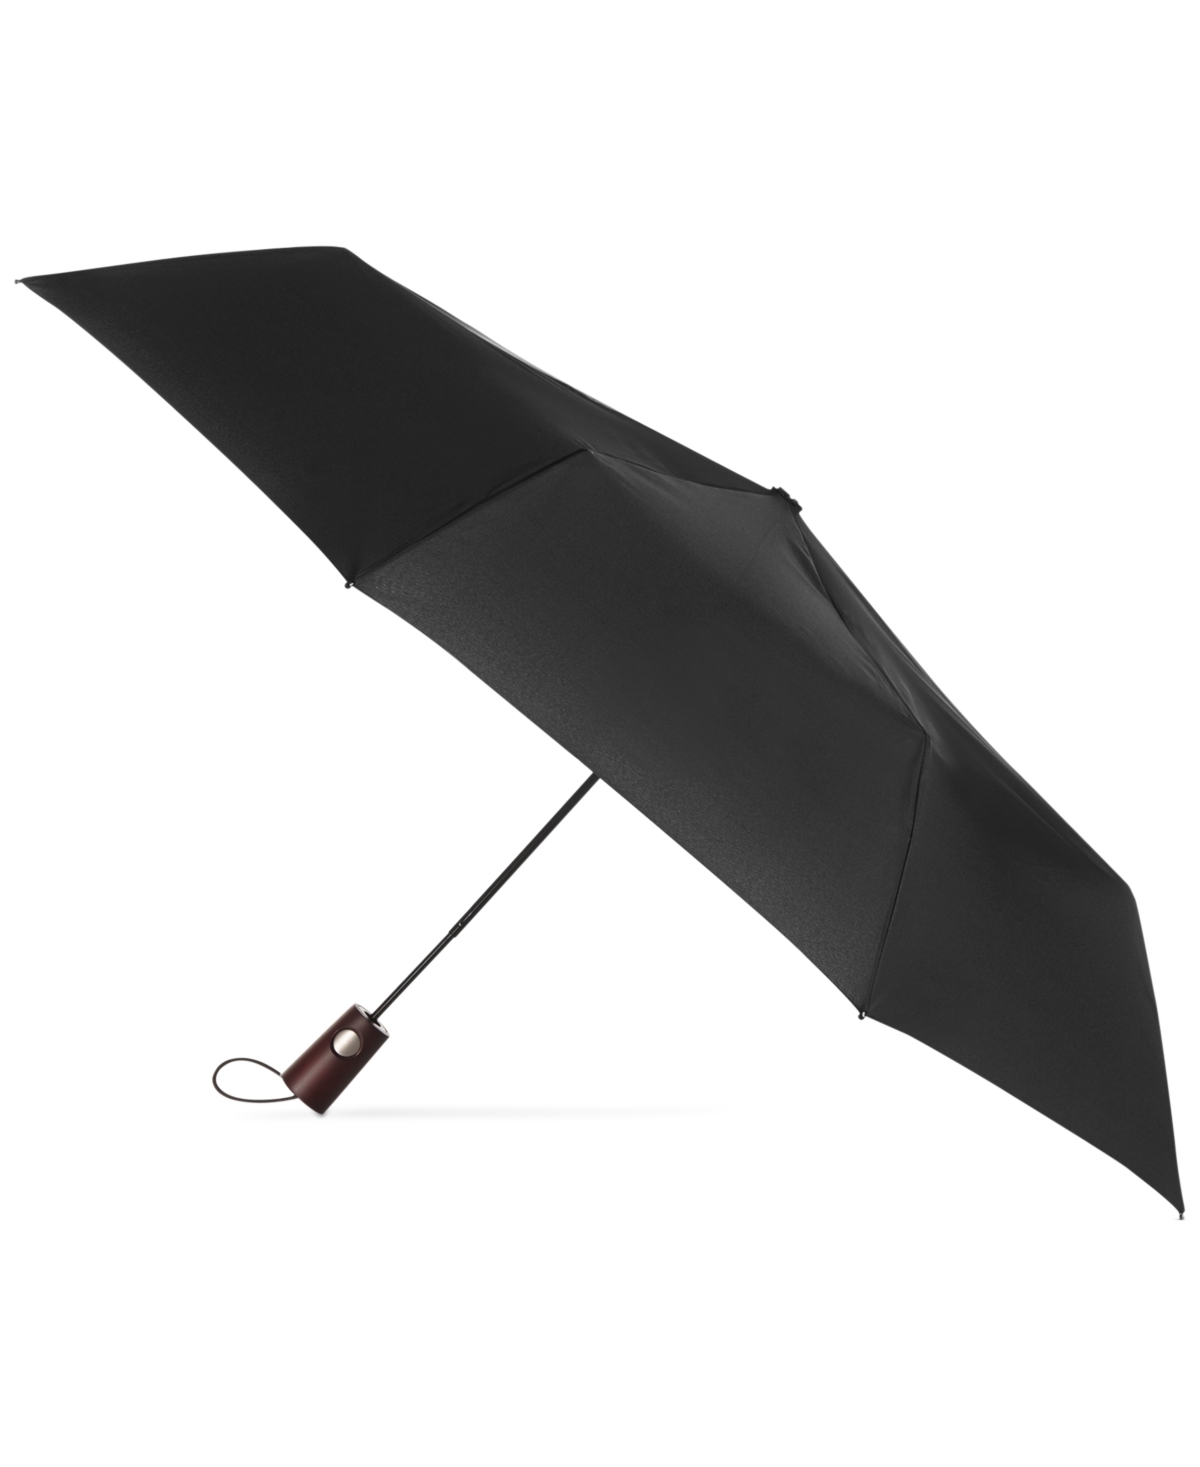 Titan Wooden Handle Umbrella - Black